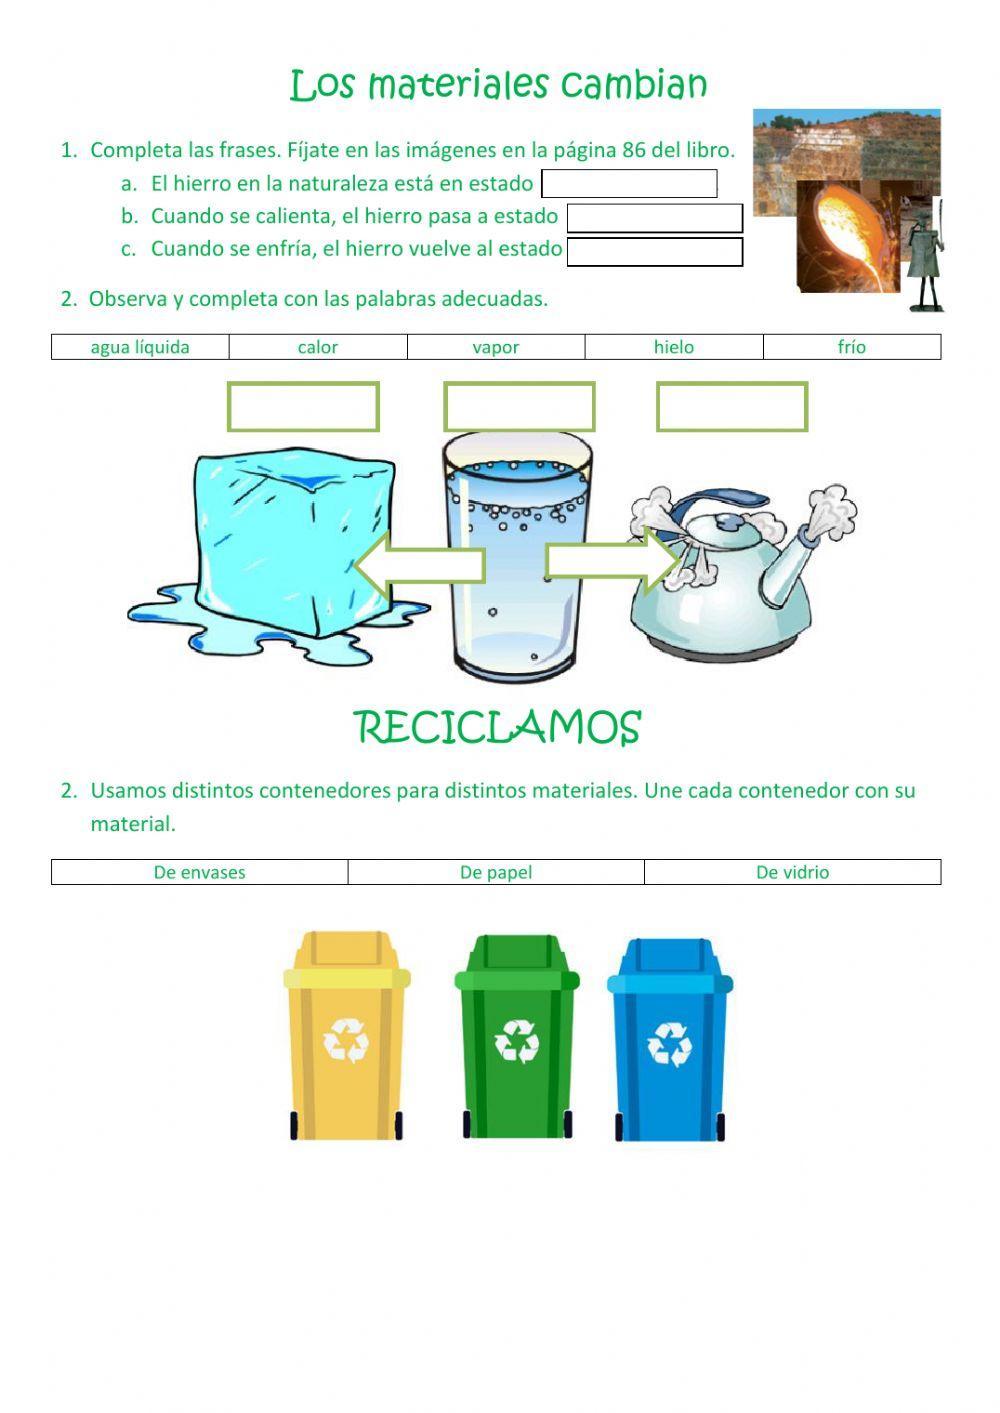 Los Materiales Comabian & Reciclamos